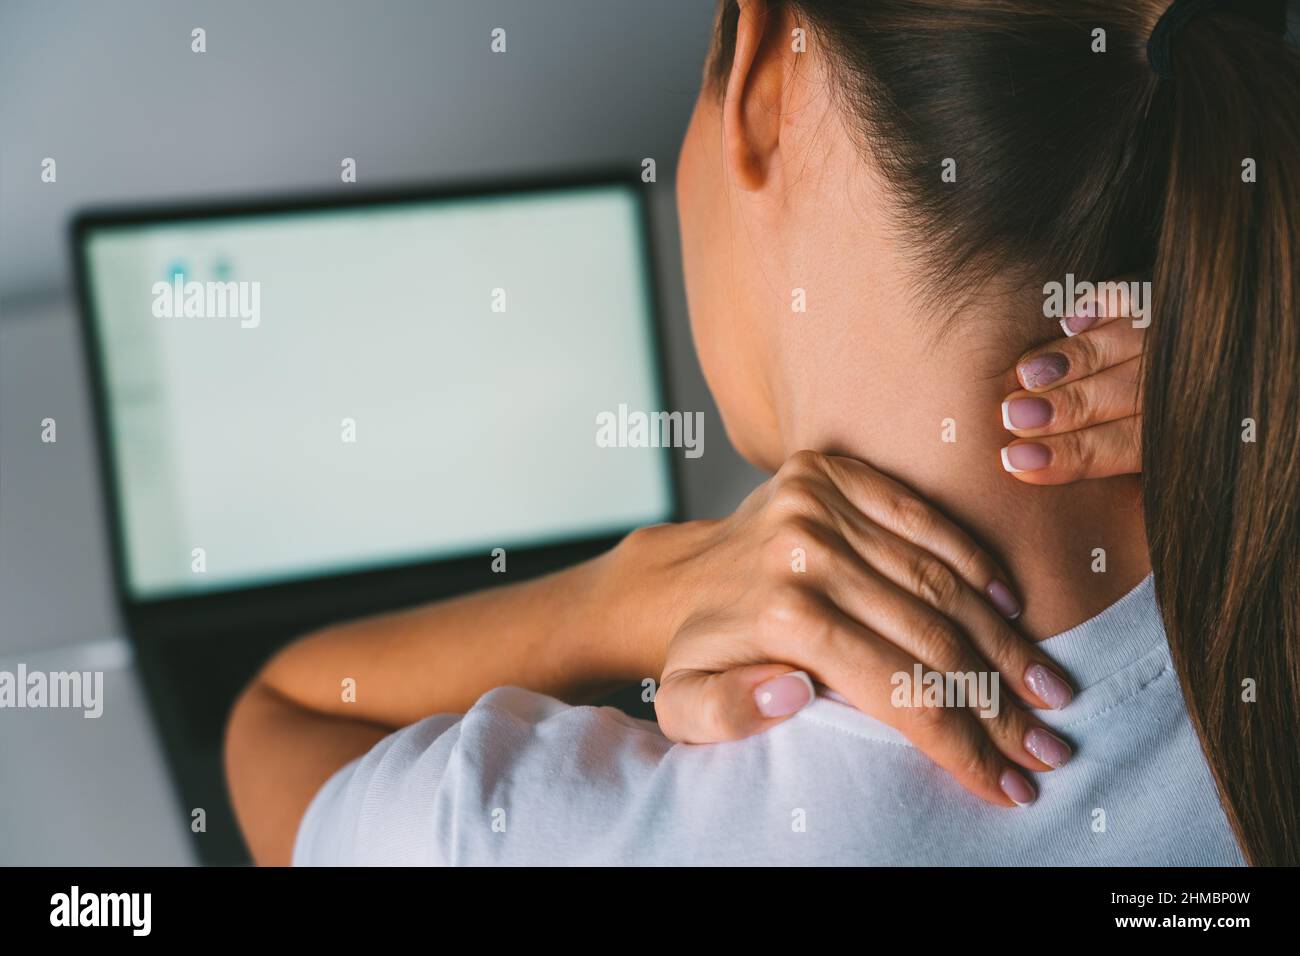 Dolore al collo dopo aver lavorato sul laptop o sul computer. Giovane donna che massaggiano il collo per alleviare il dolore dopo aver lavorato sul pc Foto Stock